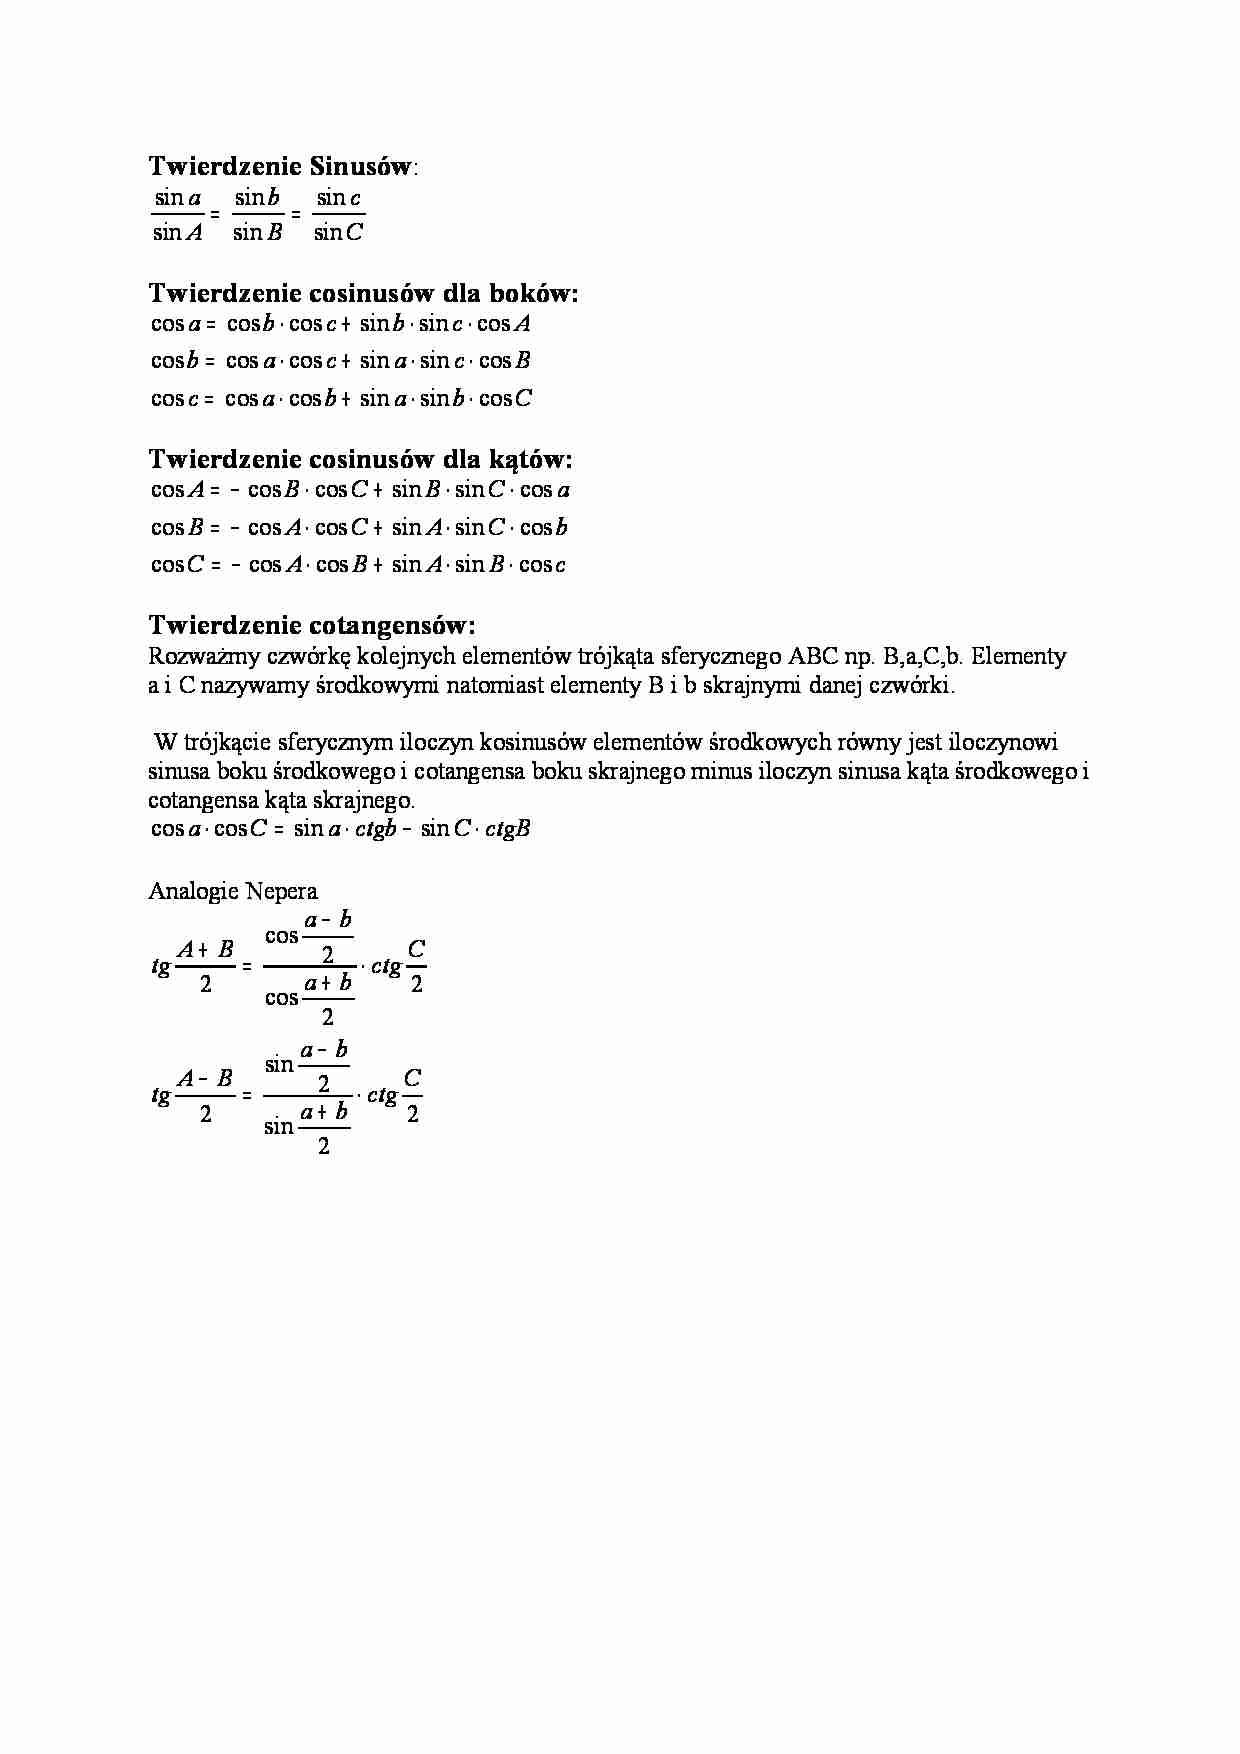 Twierdzenie sinusów, cosinusów i cotangensów - strona 1